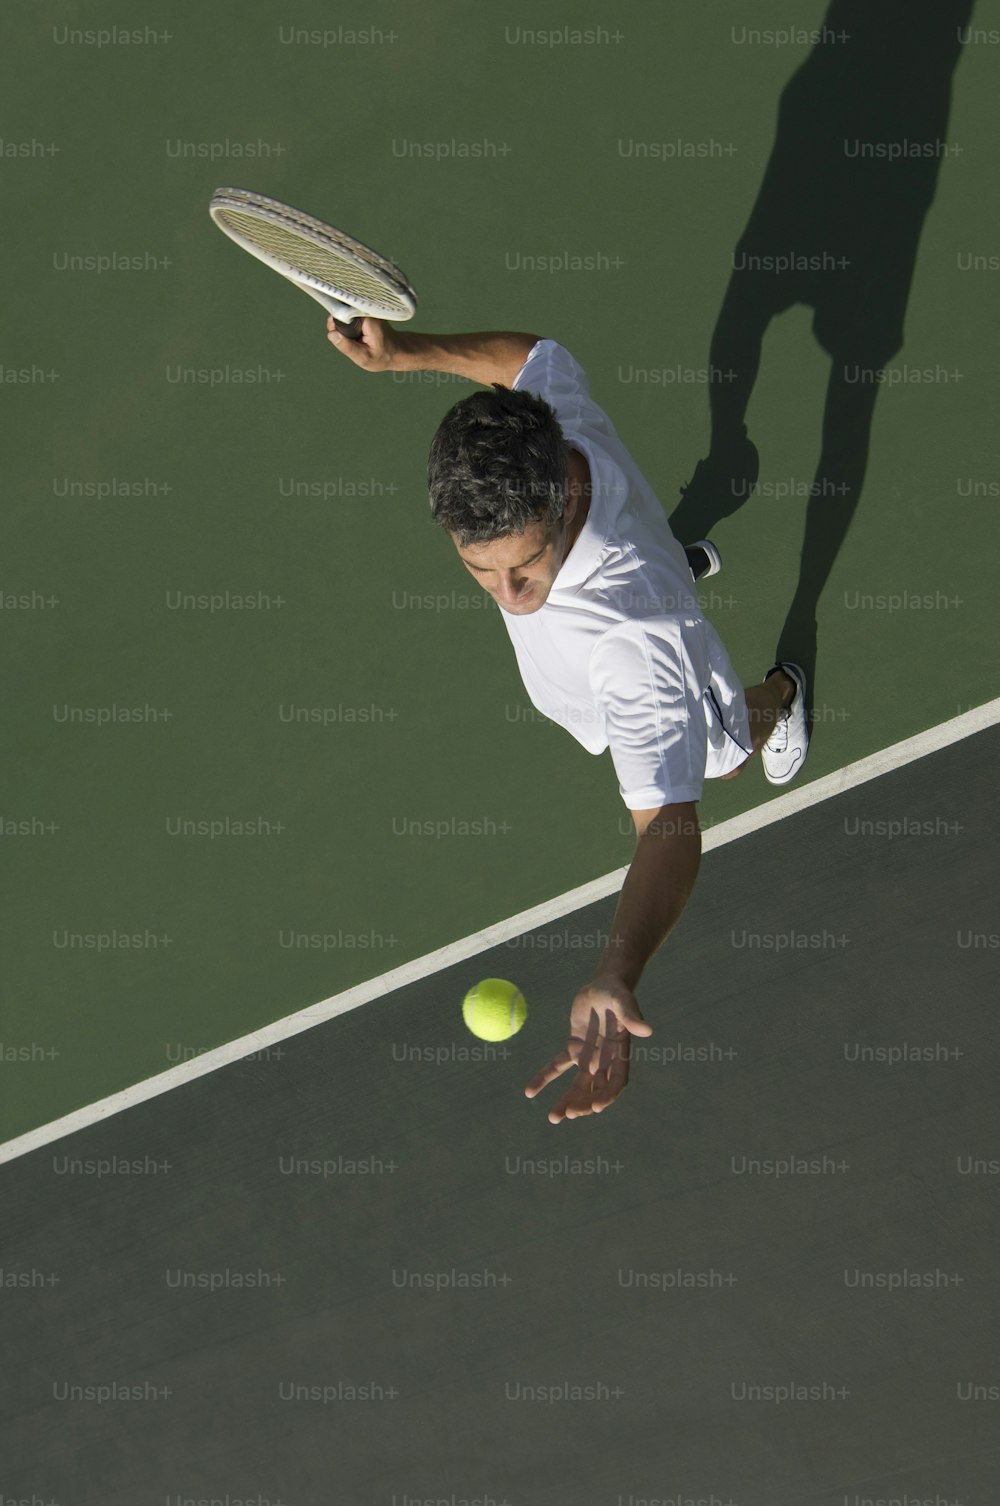 흰 셔츠와 반바지를 입은 남자가 테니스 게임을 하고 있다